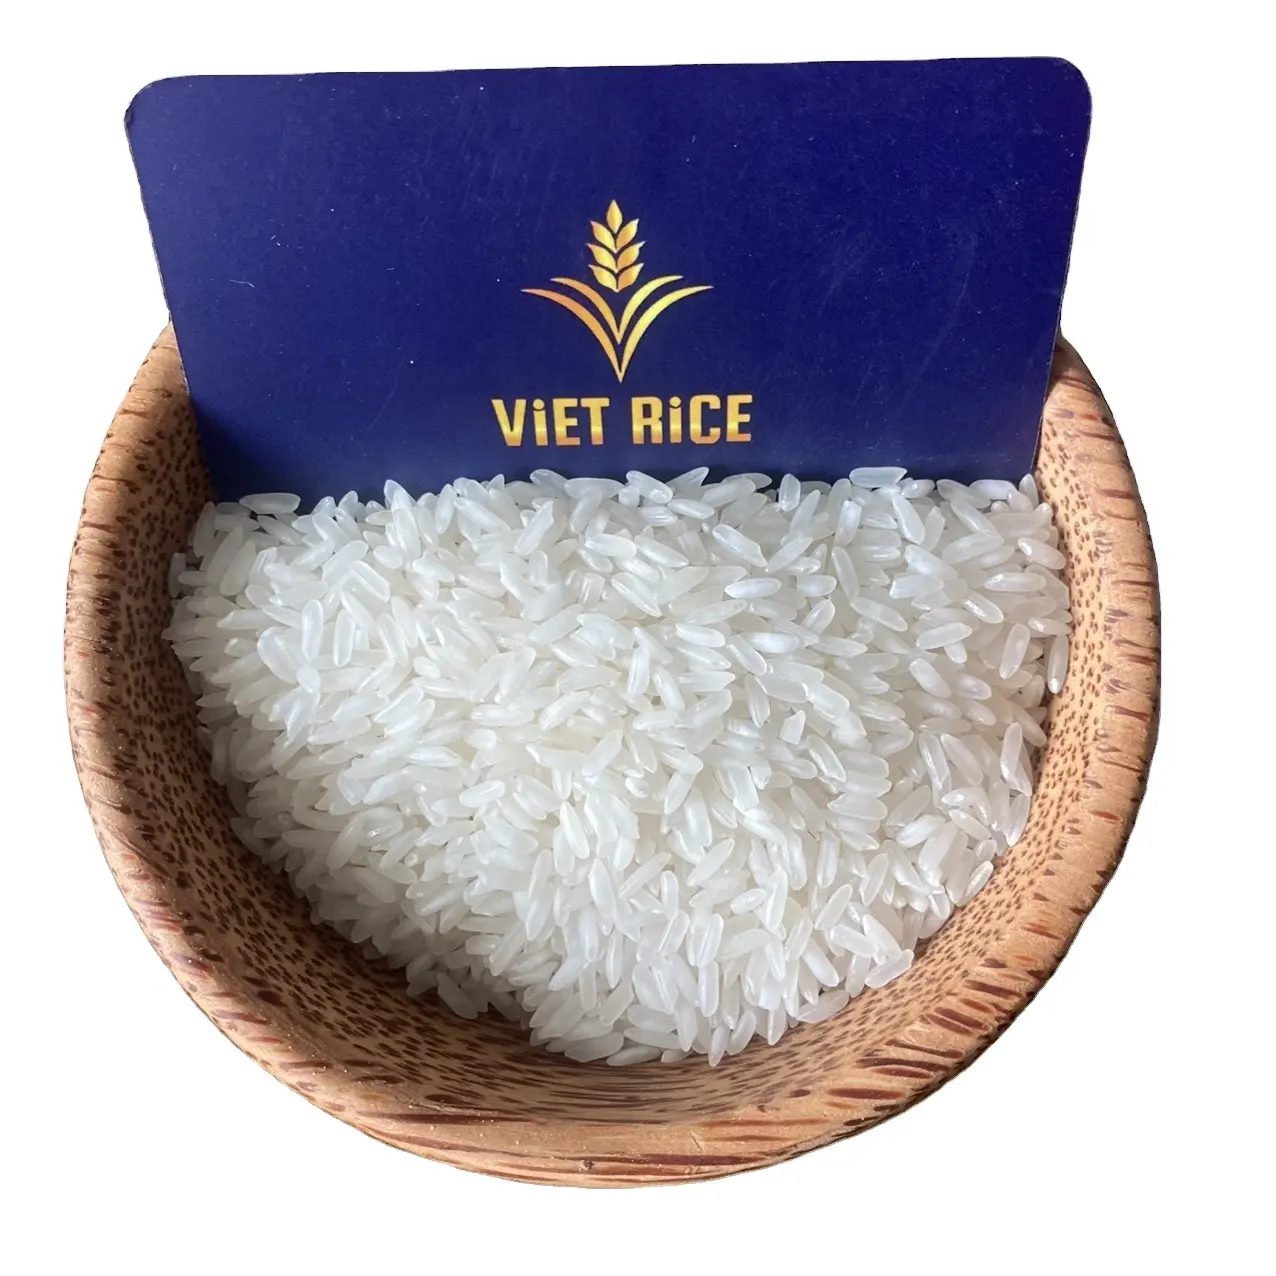 אורז לבן גרגיר ארוך IR504 הנמכר ביותר - האורז הלבן בעל הגרגירים הארוכים הפופולרי ביותר המסופק באיכות פרימיום מווייטנאם